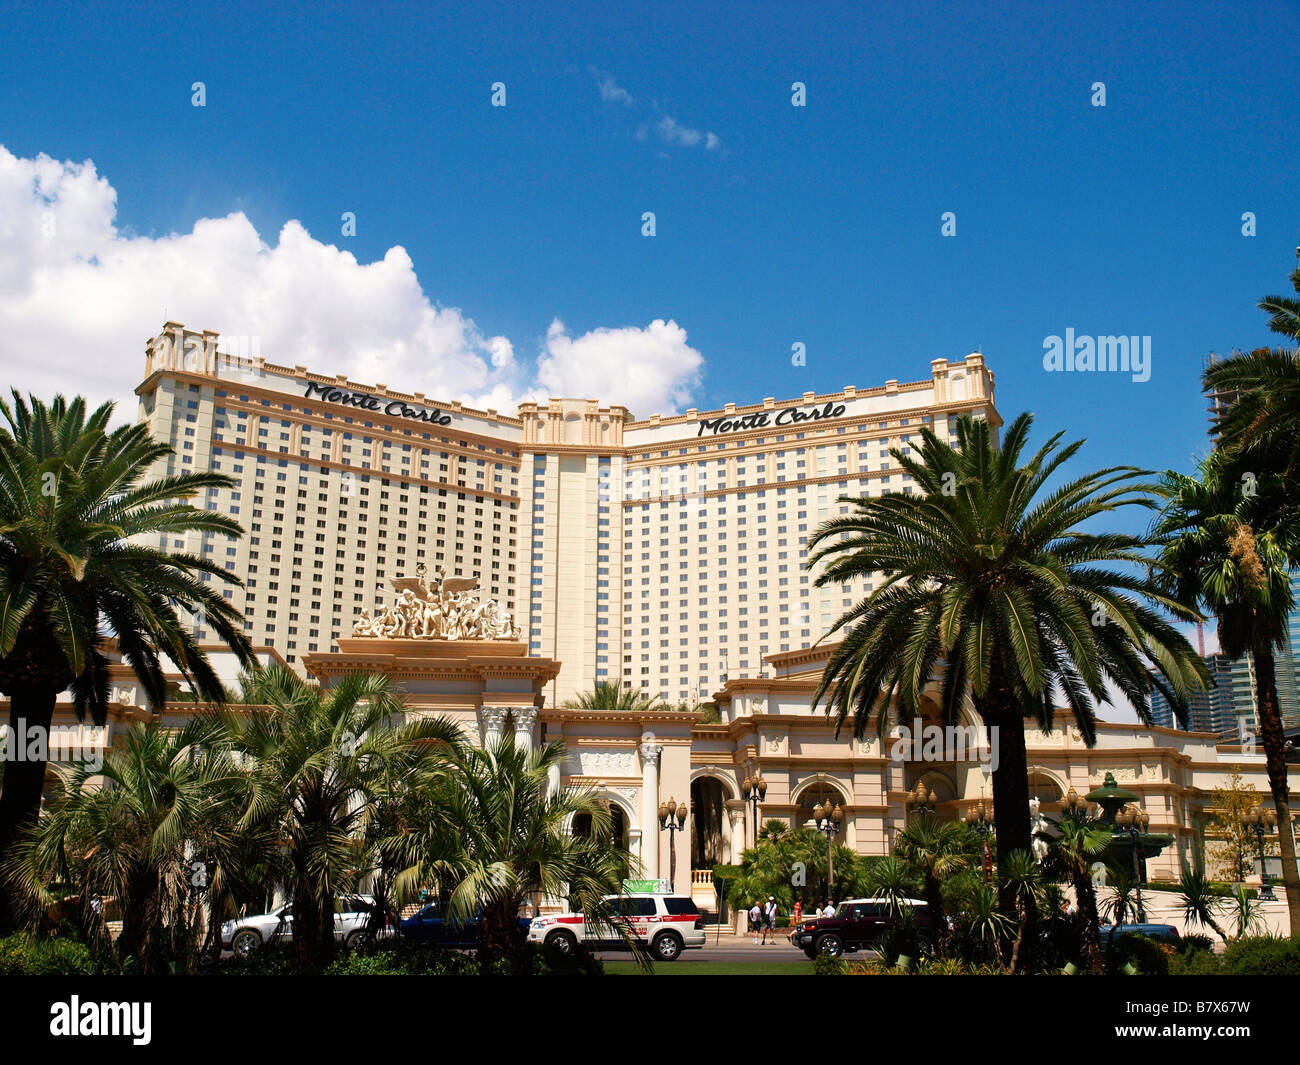 Monte Carlo Hotel and Casino Las Vegas Boulevard Las Vegas Nevada USA Stock Photo